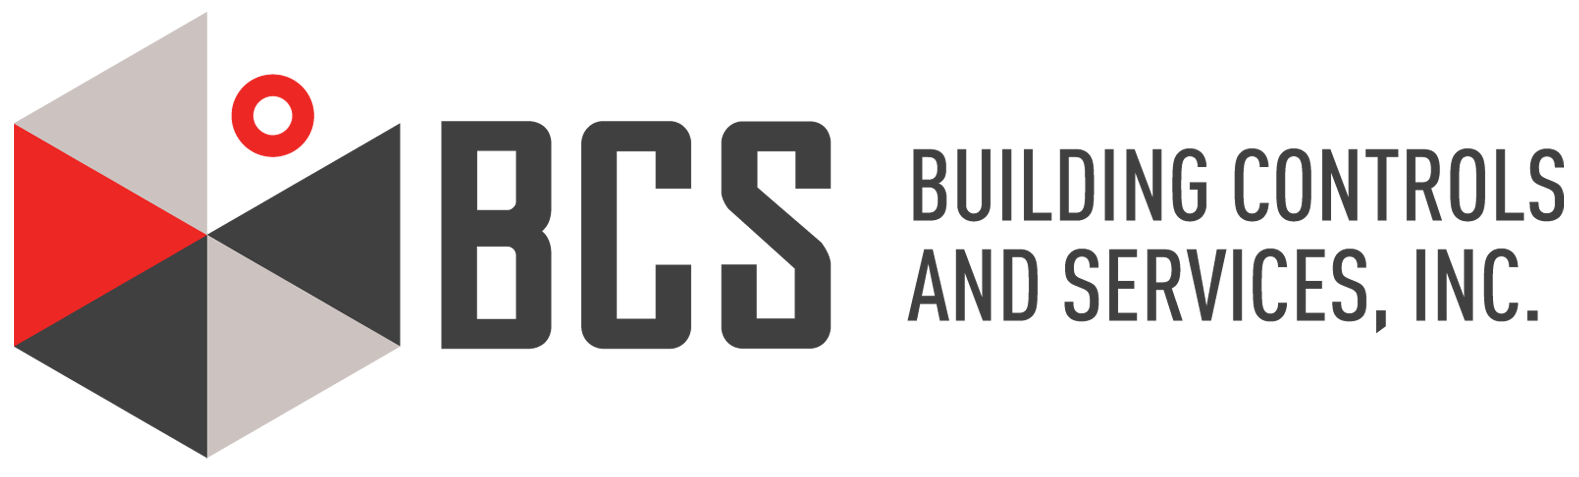 BCS_Final_Logo_Color.png